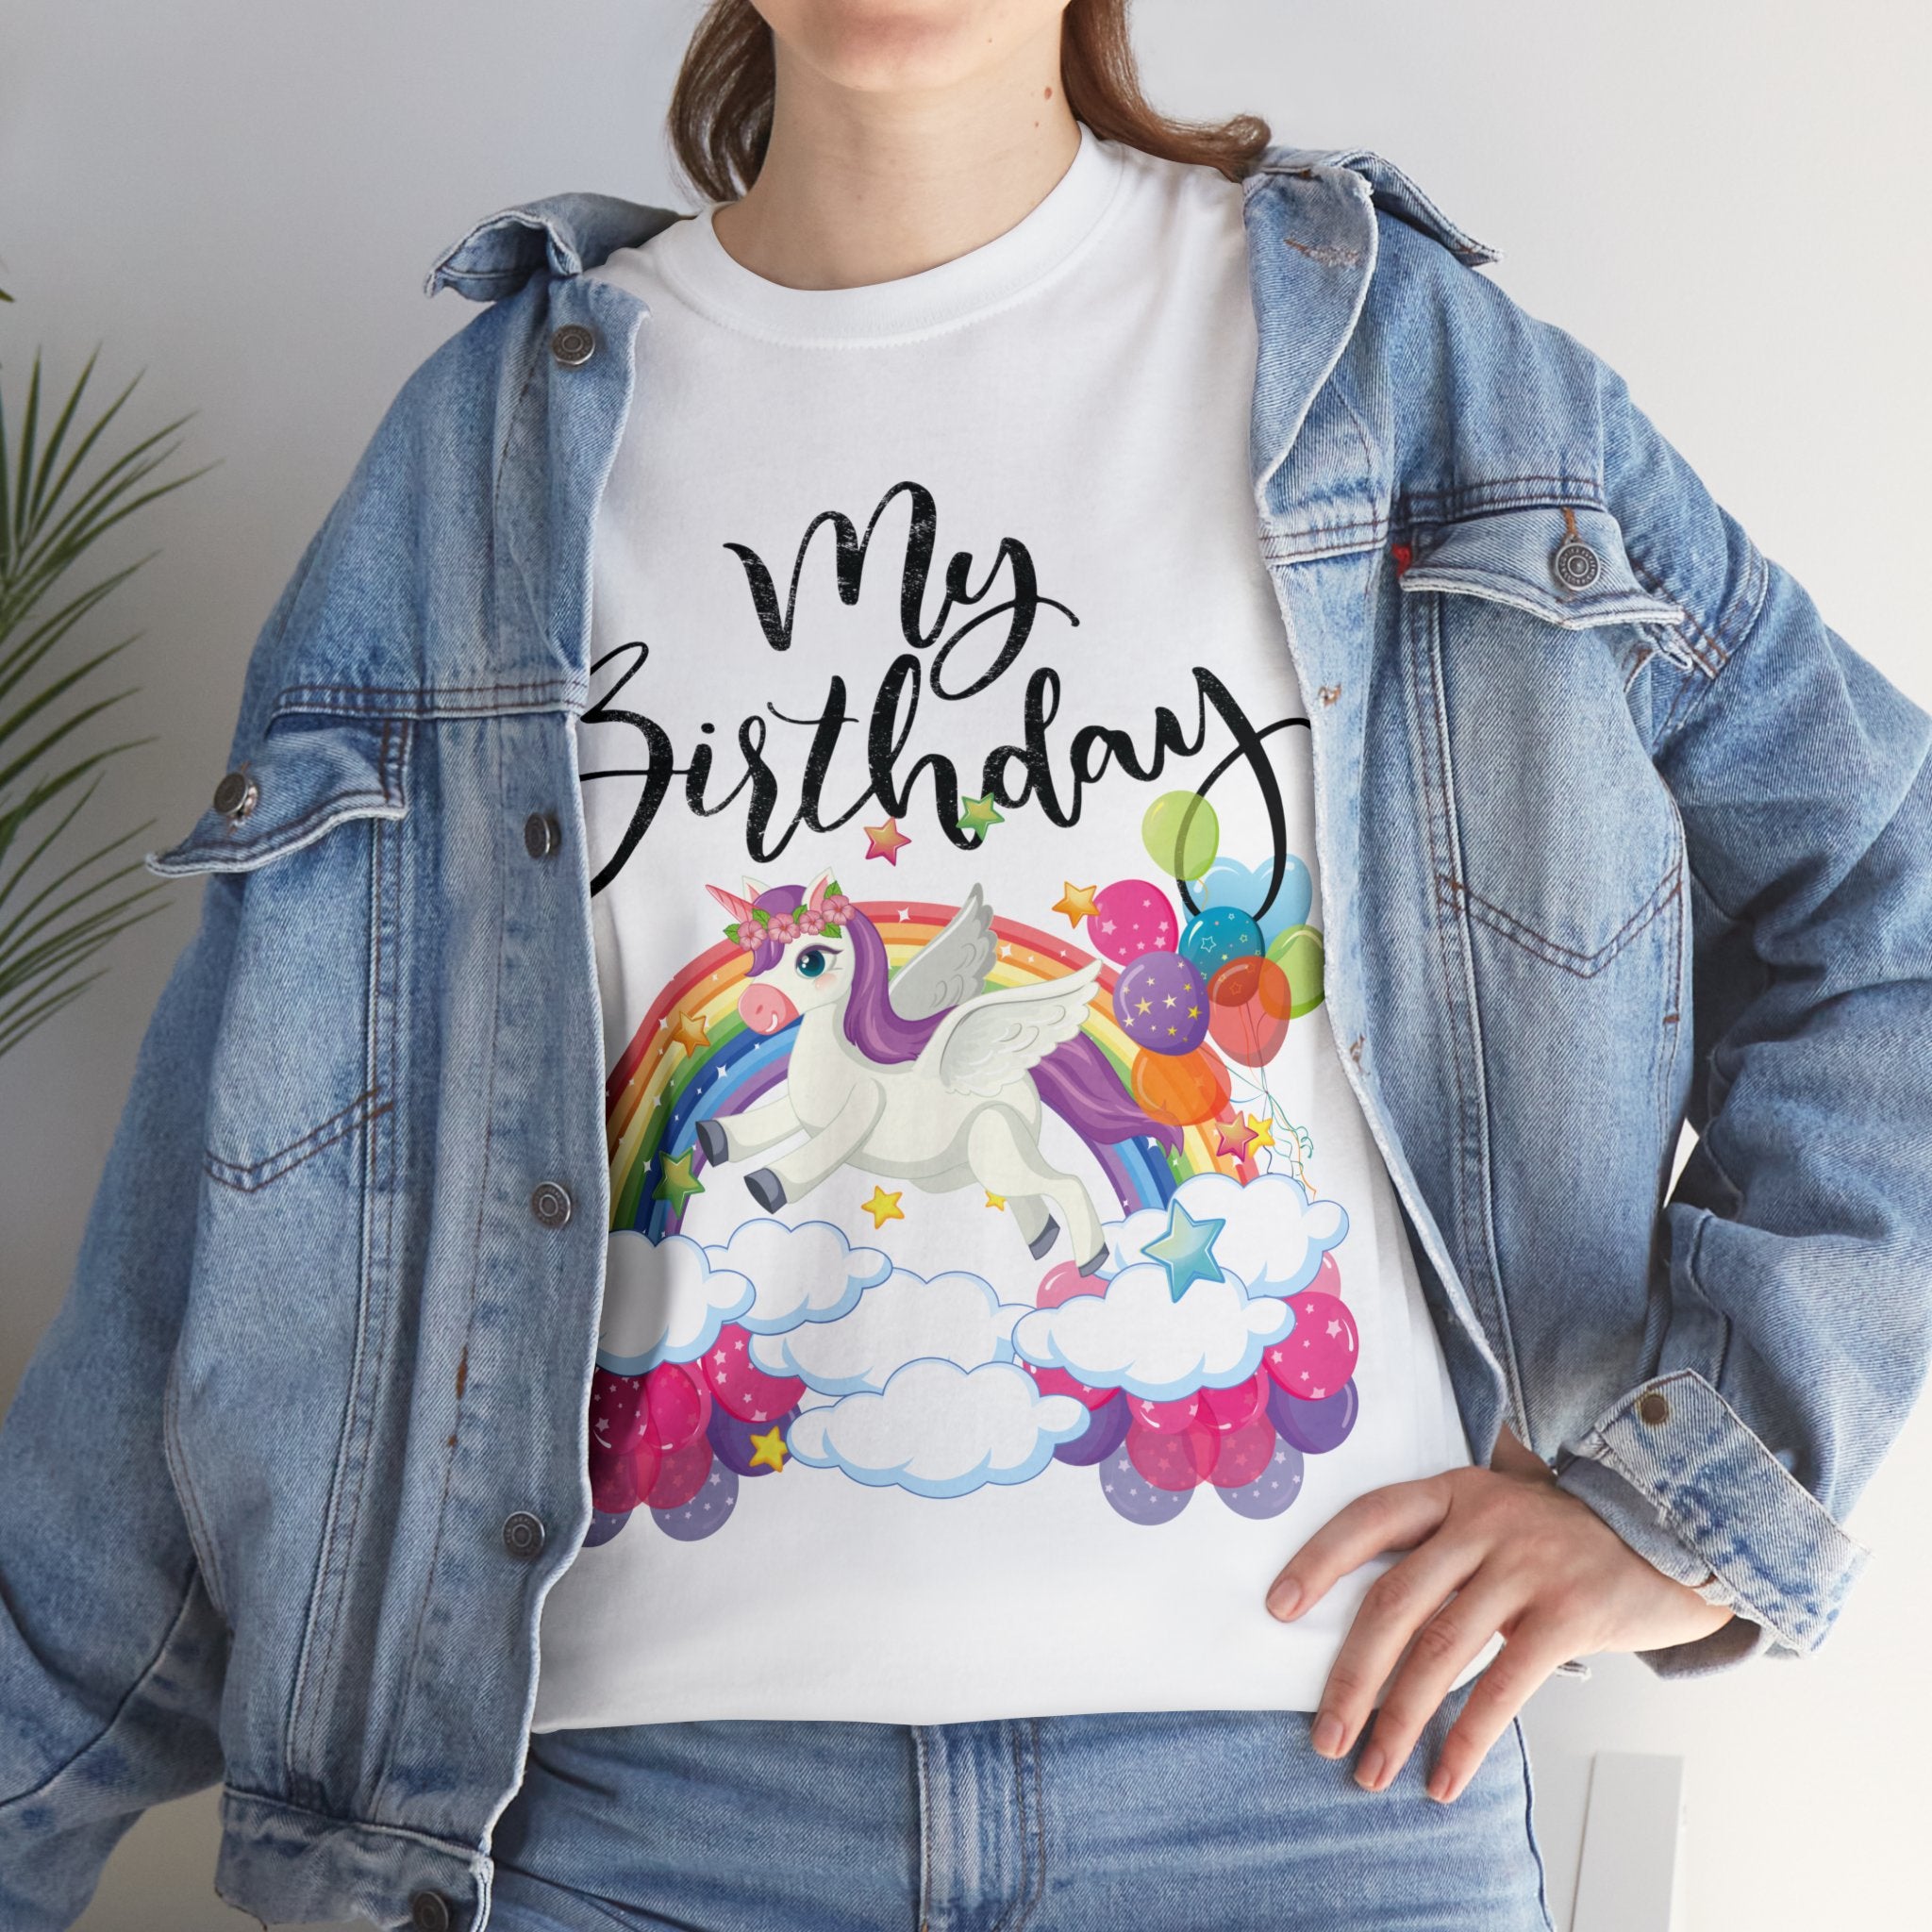 My Birthday Retro Unicorn and Rainbow T-Shirt